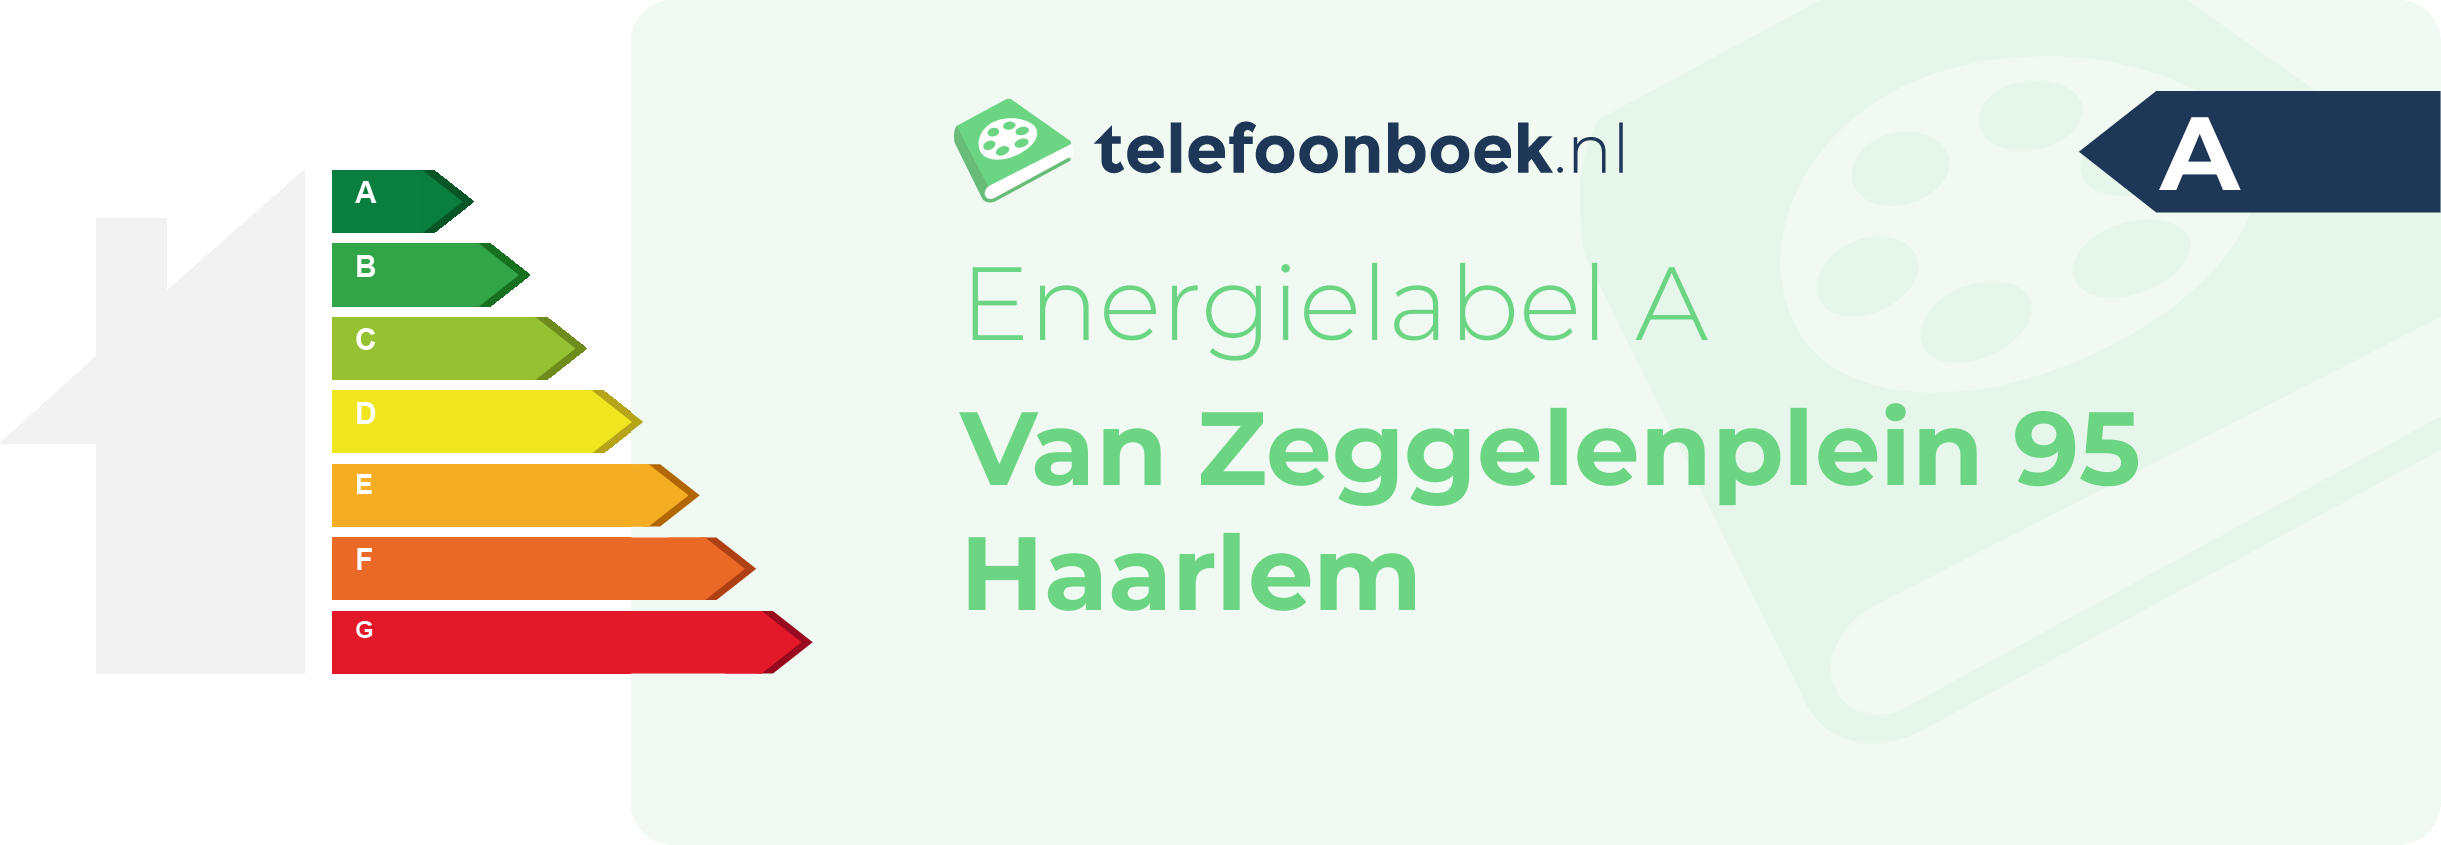 Energielabel Van Zeggelenplein 95 Haarlem